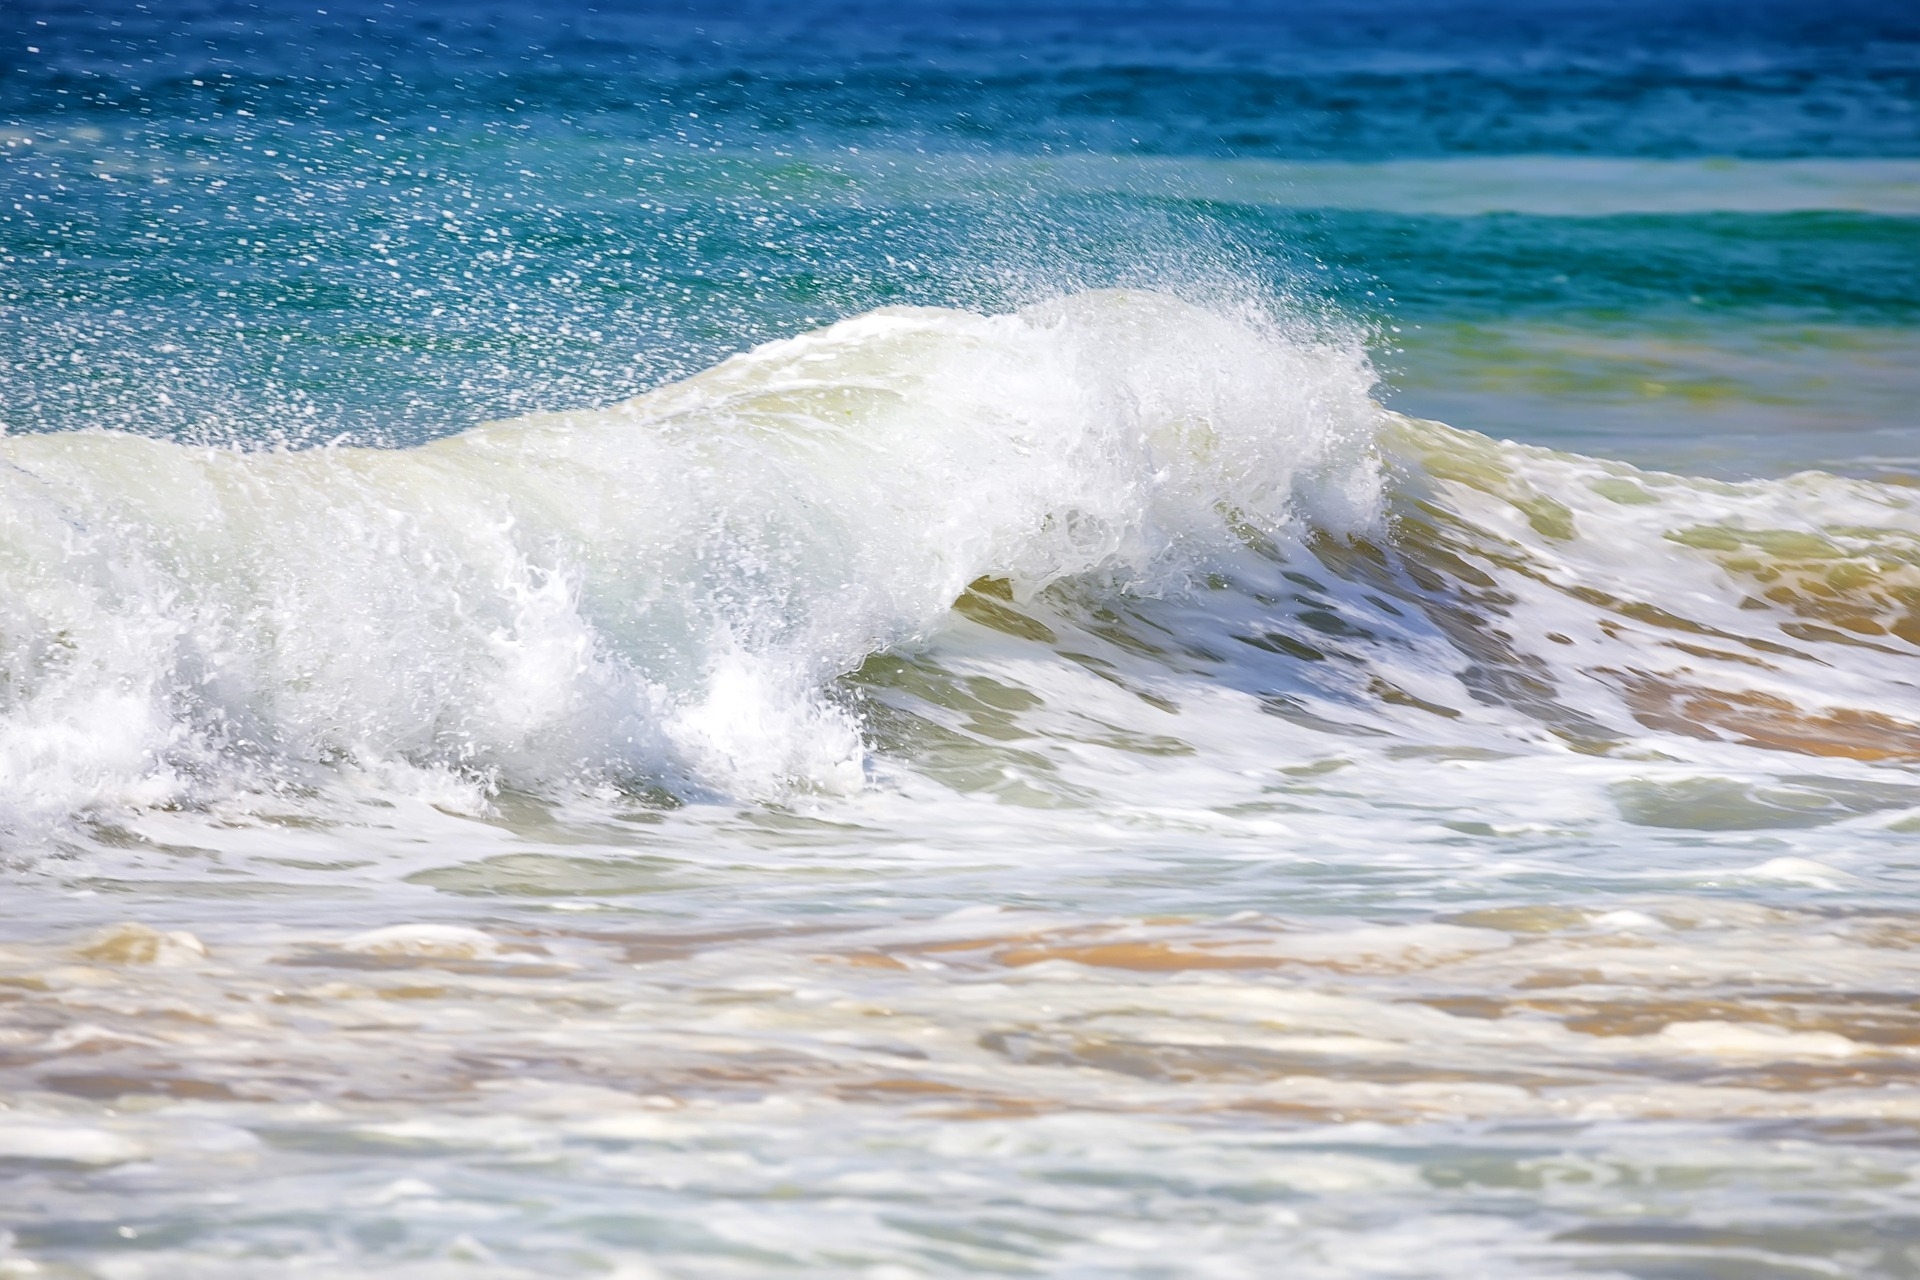 Blue Bond: ombak yang pecah di pantai melambangkan vitalitas laut